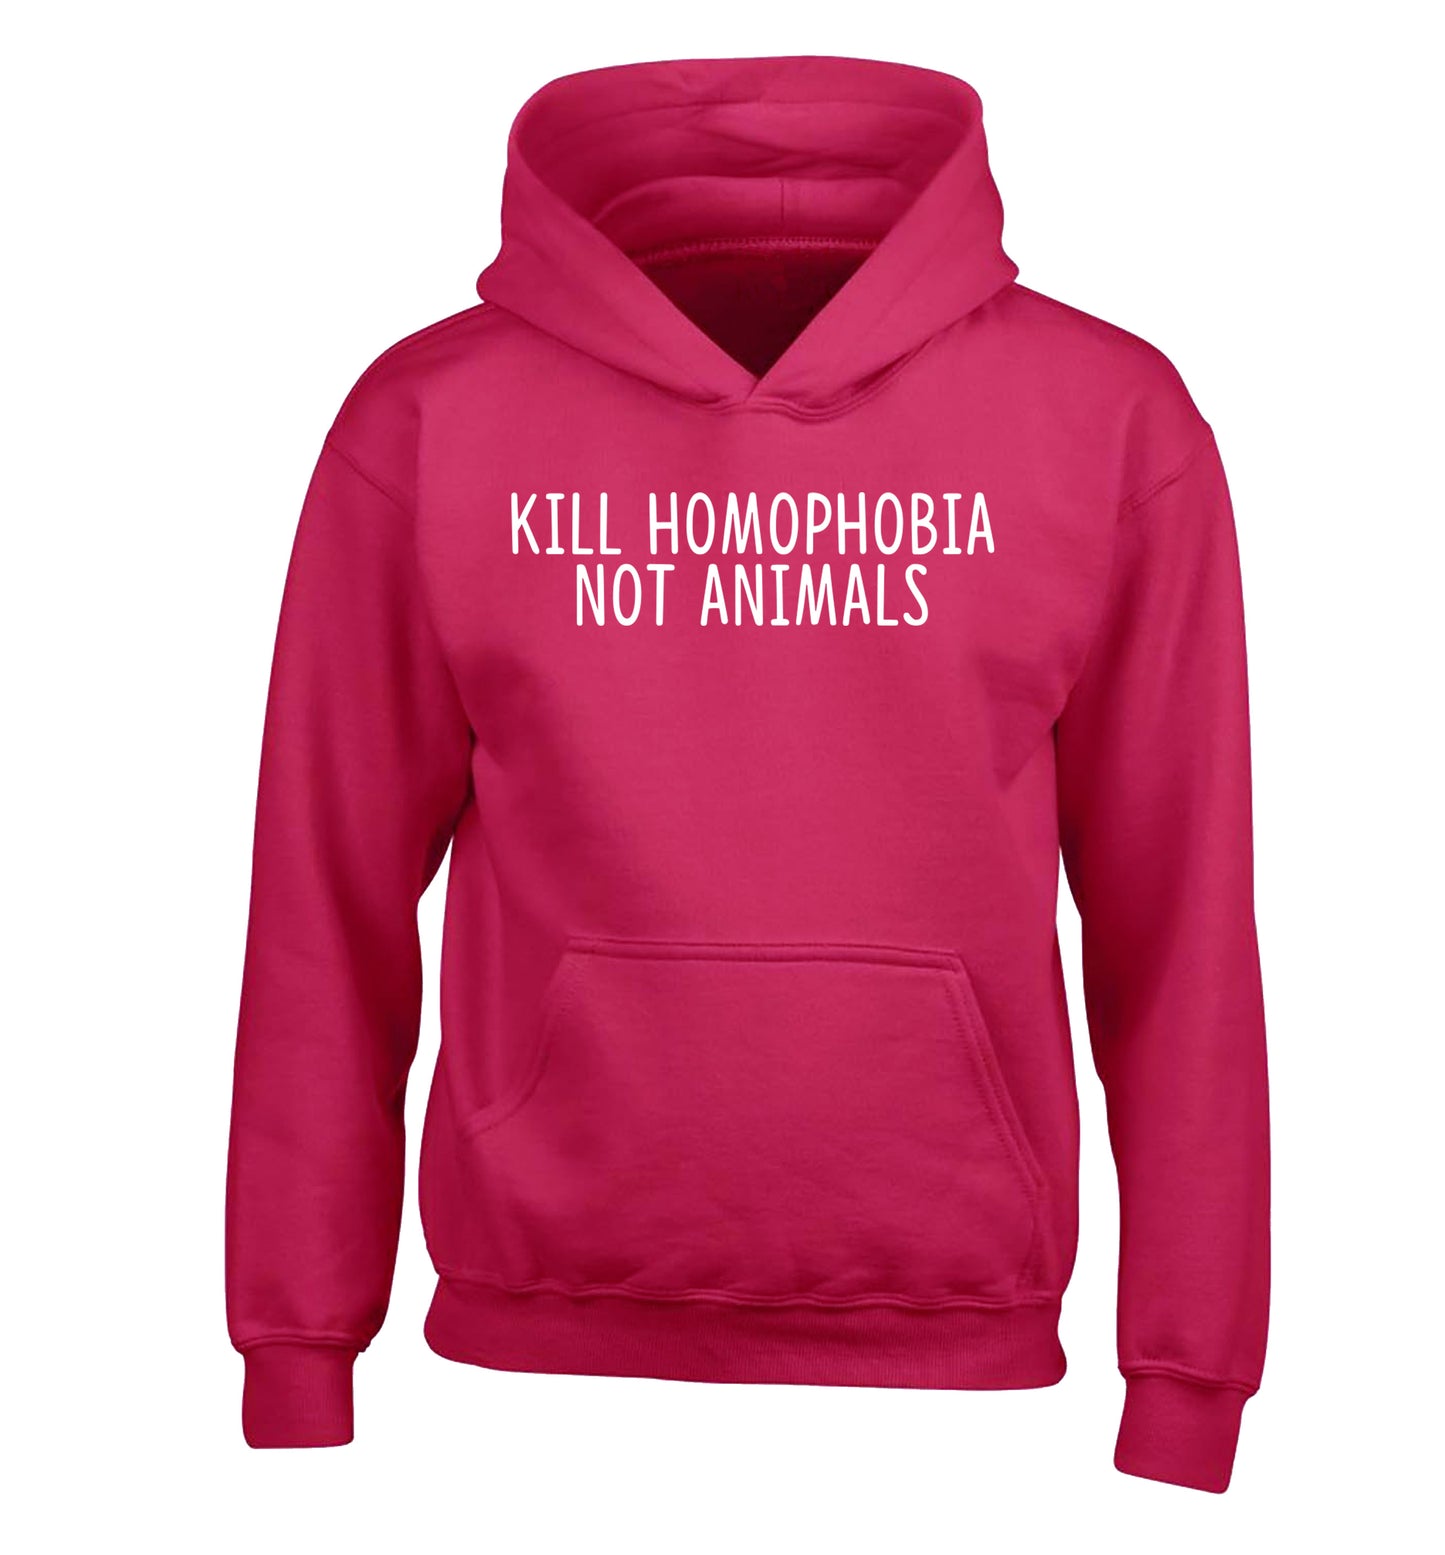 Kill Homophobia Not Animals children's pink hoodie 12-13 Years